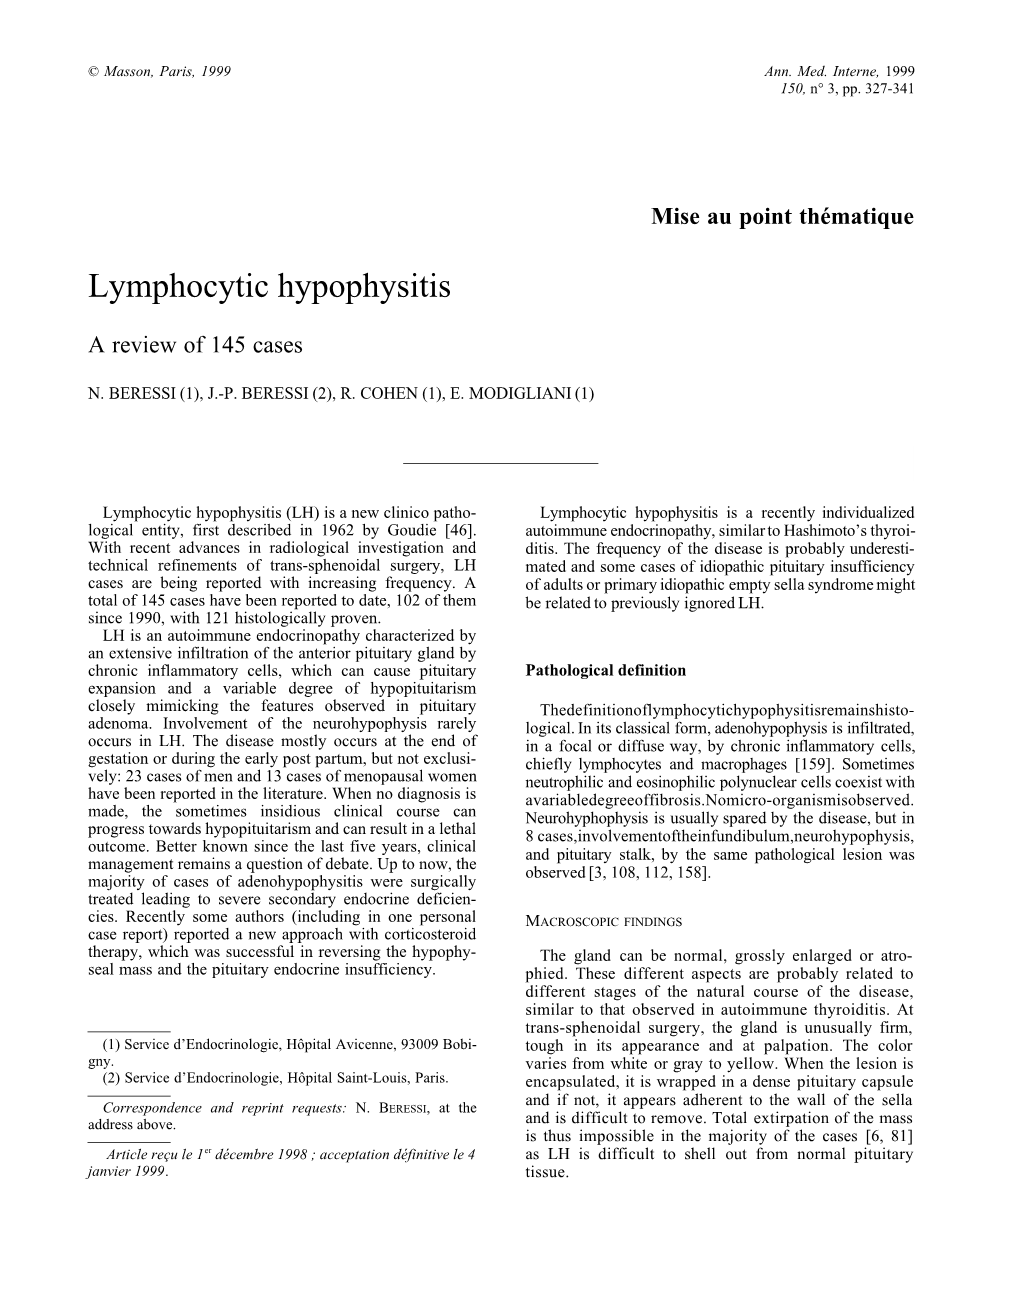 Lymphocytic Hypophysitis